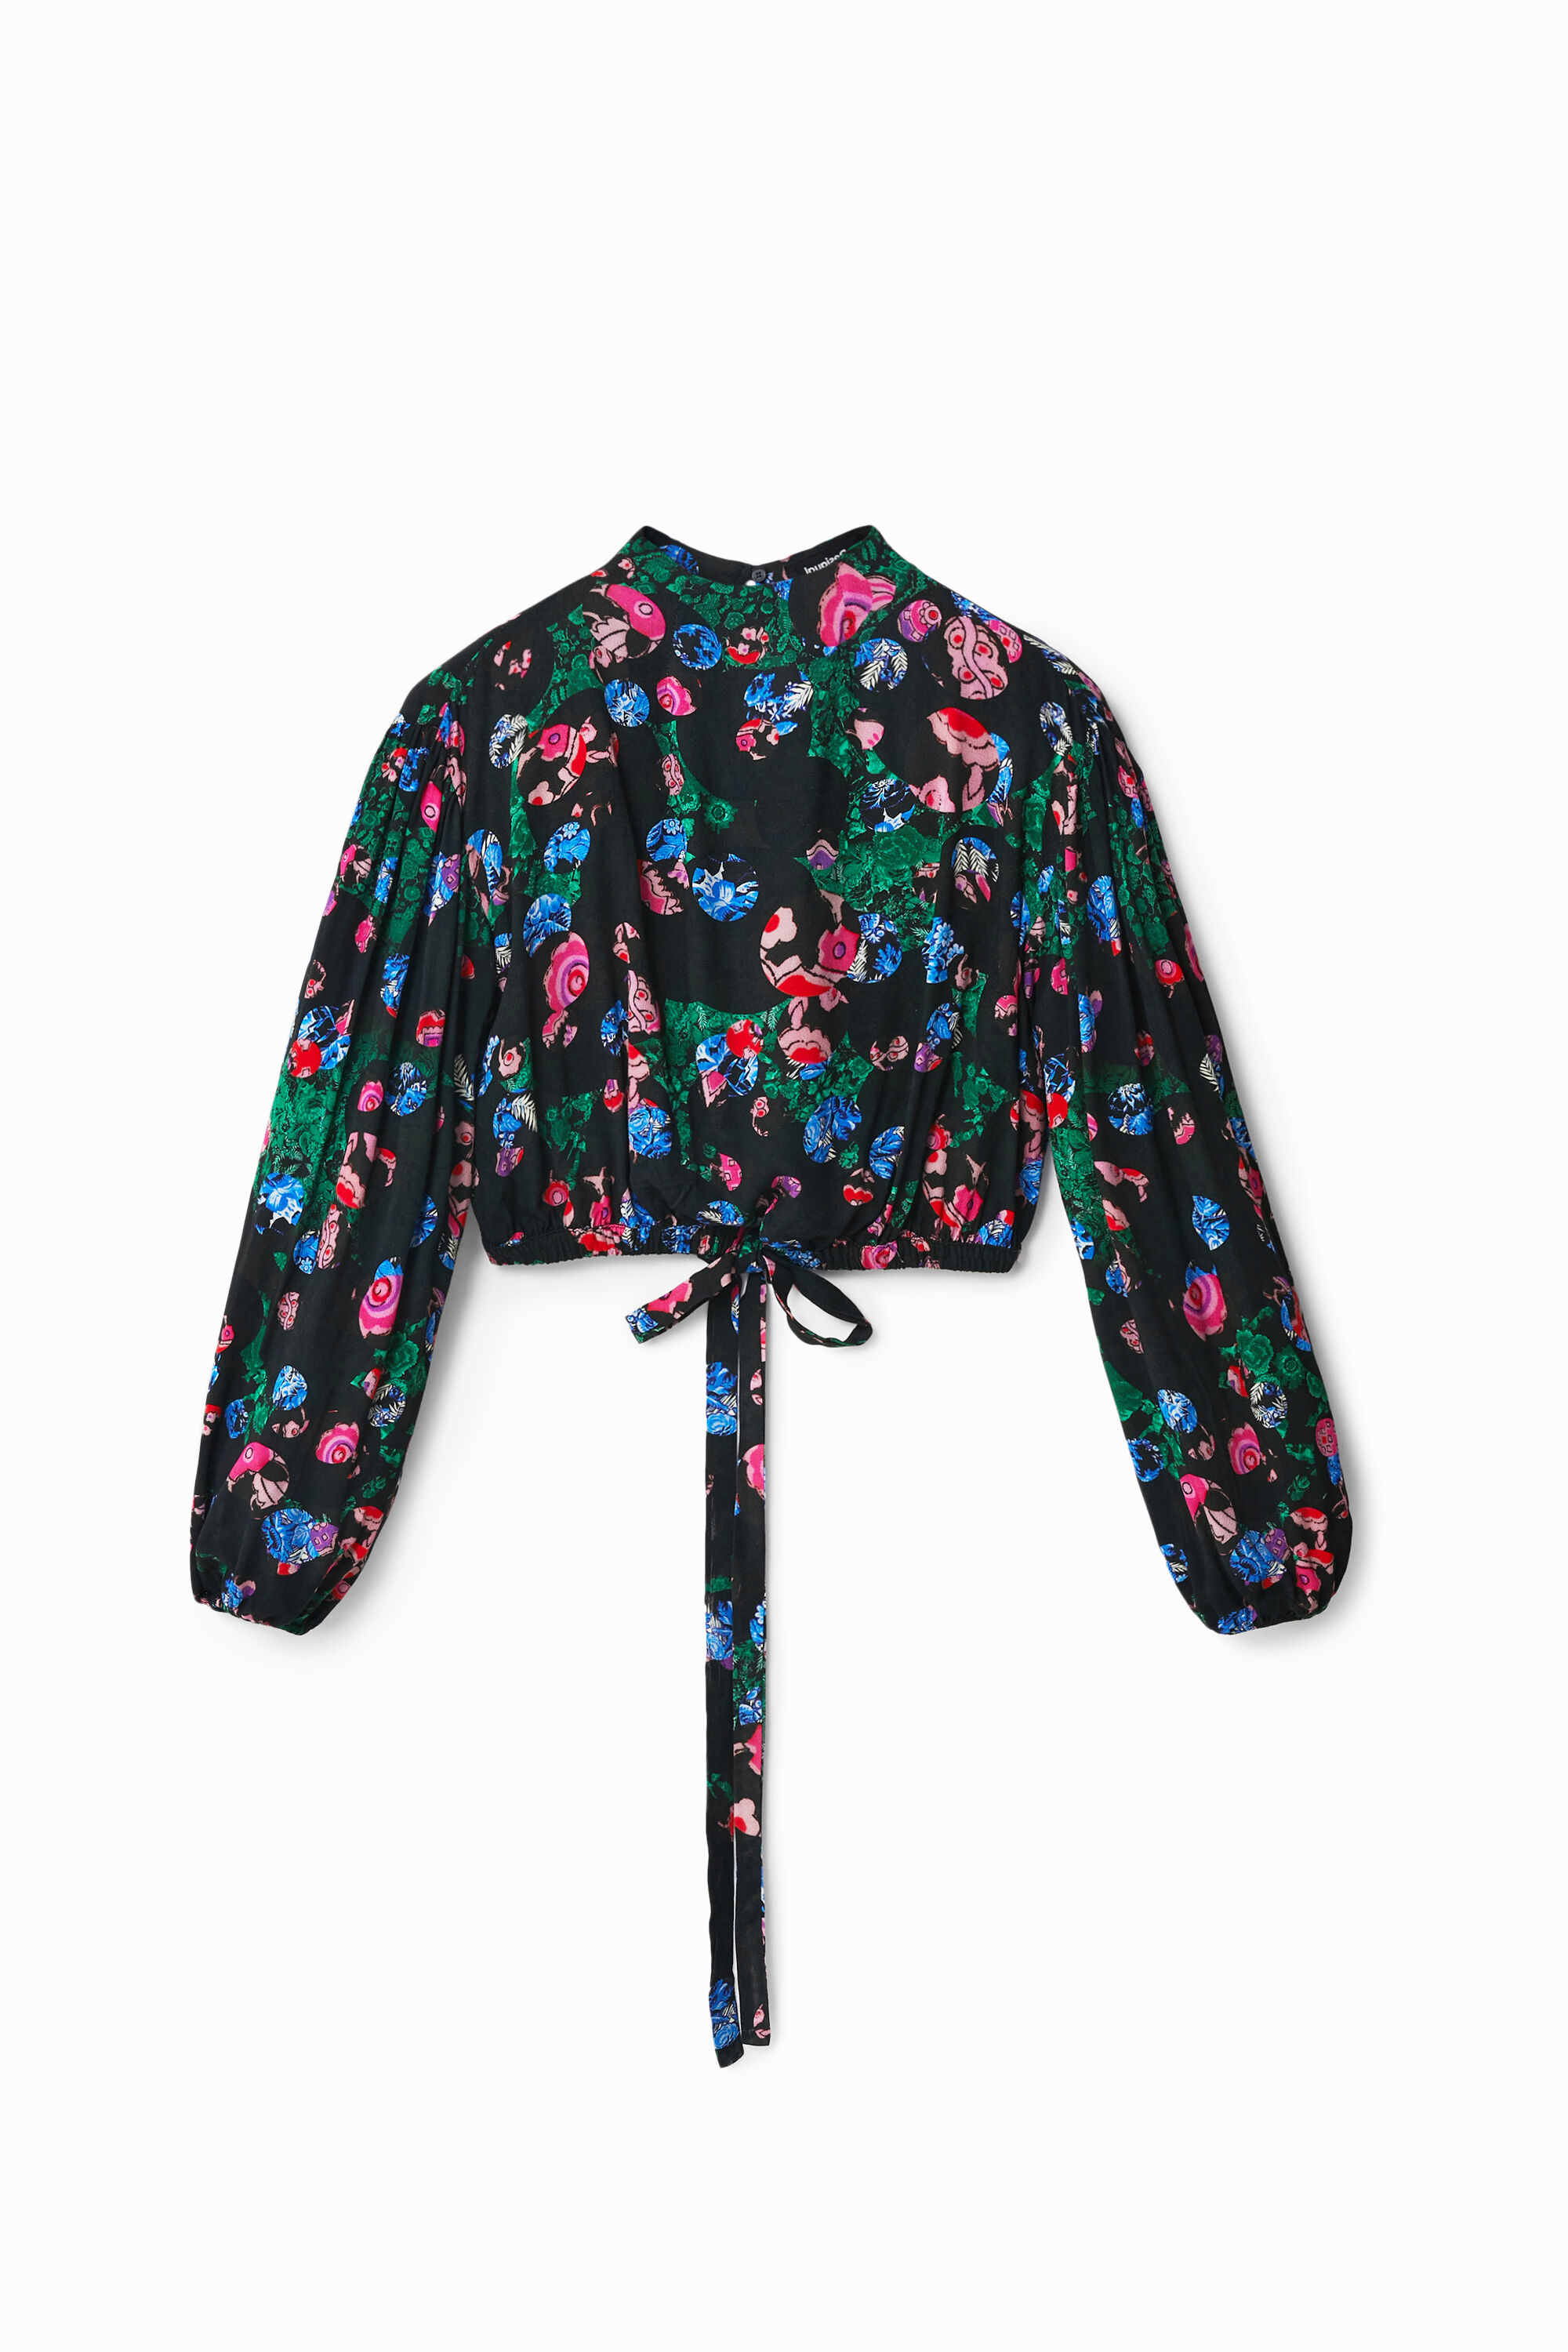 M. Christian Lacroix cropped floral blouse - BLACK - S